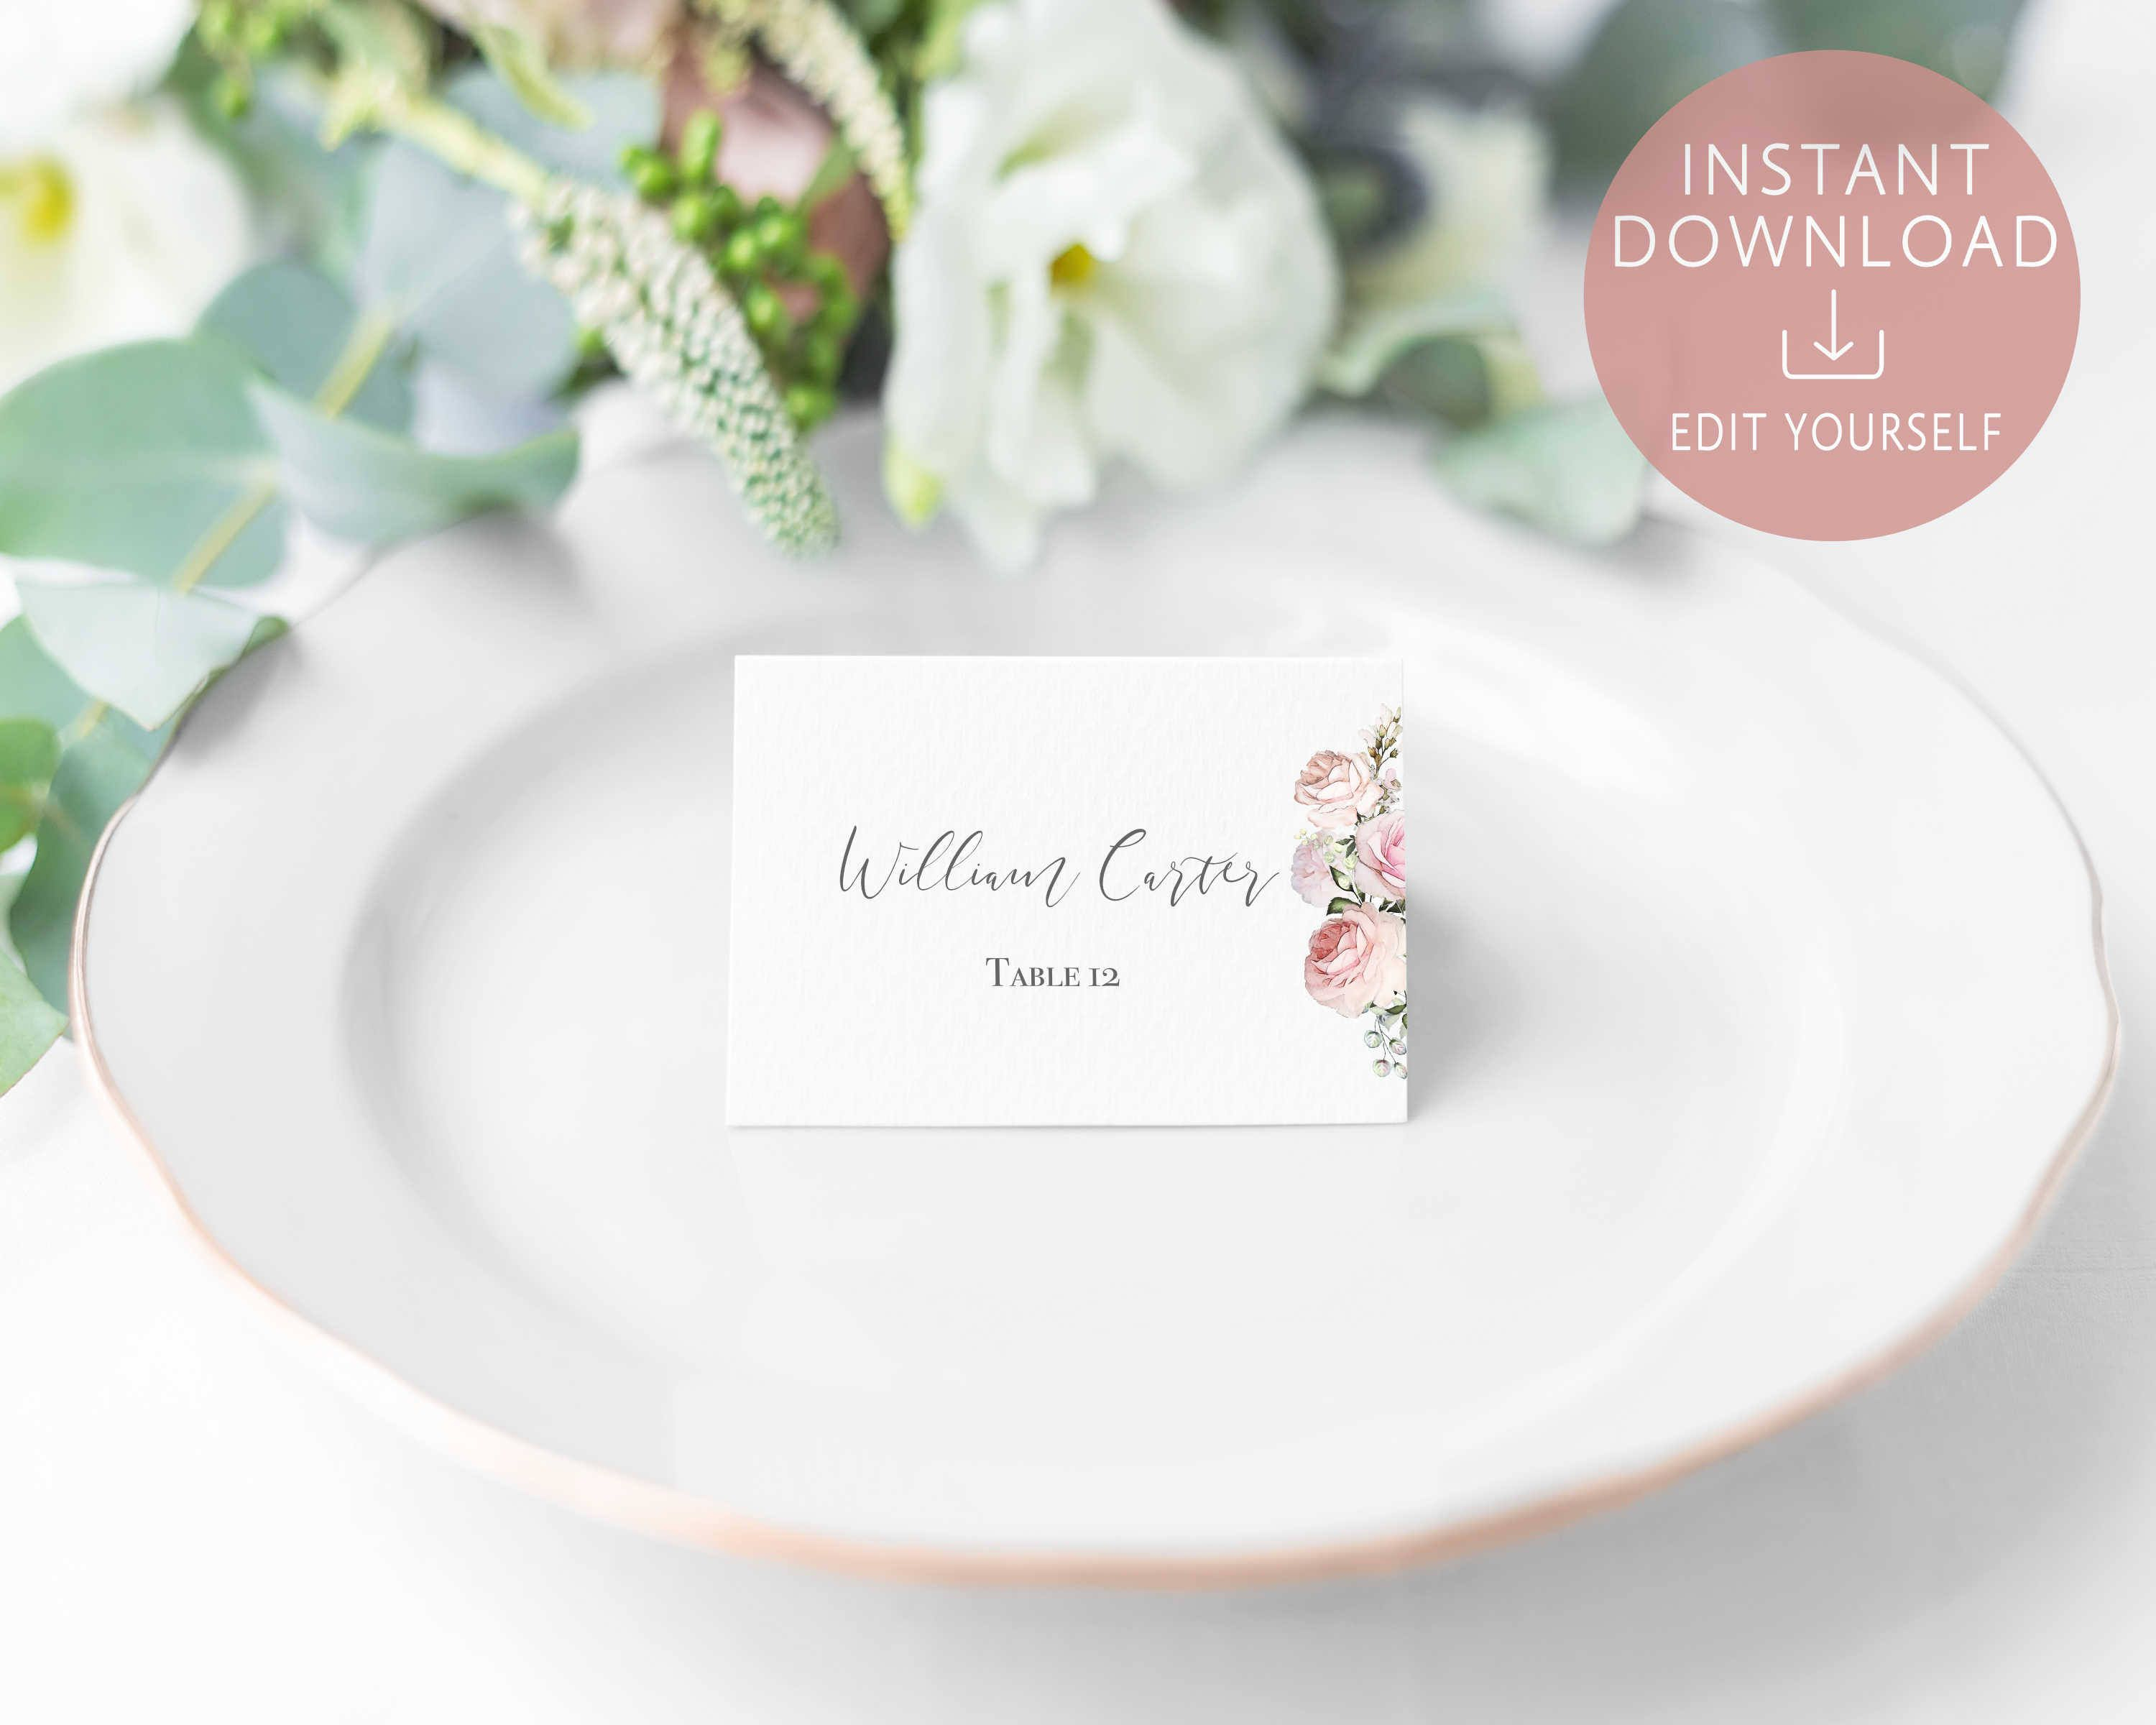 Wedding Place Cards Printable, Editable Name Card Template Inside Table Name Card Template